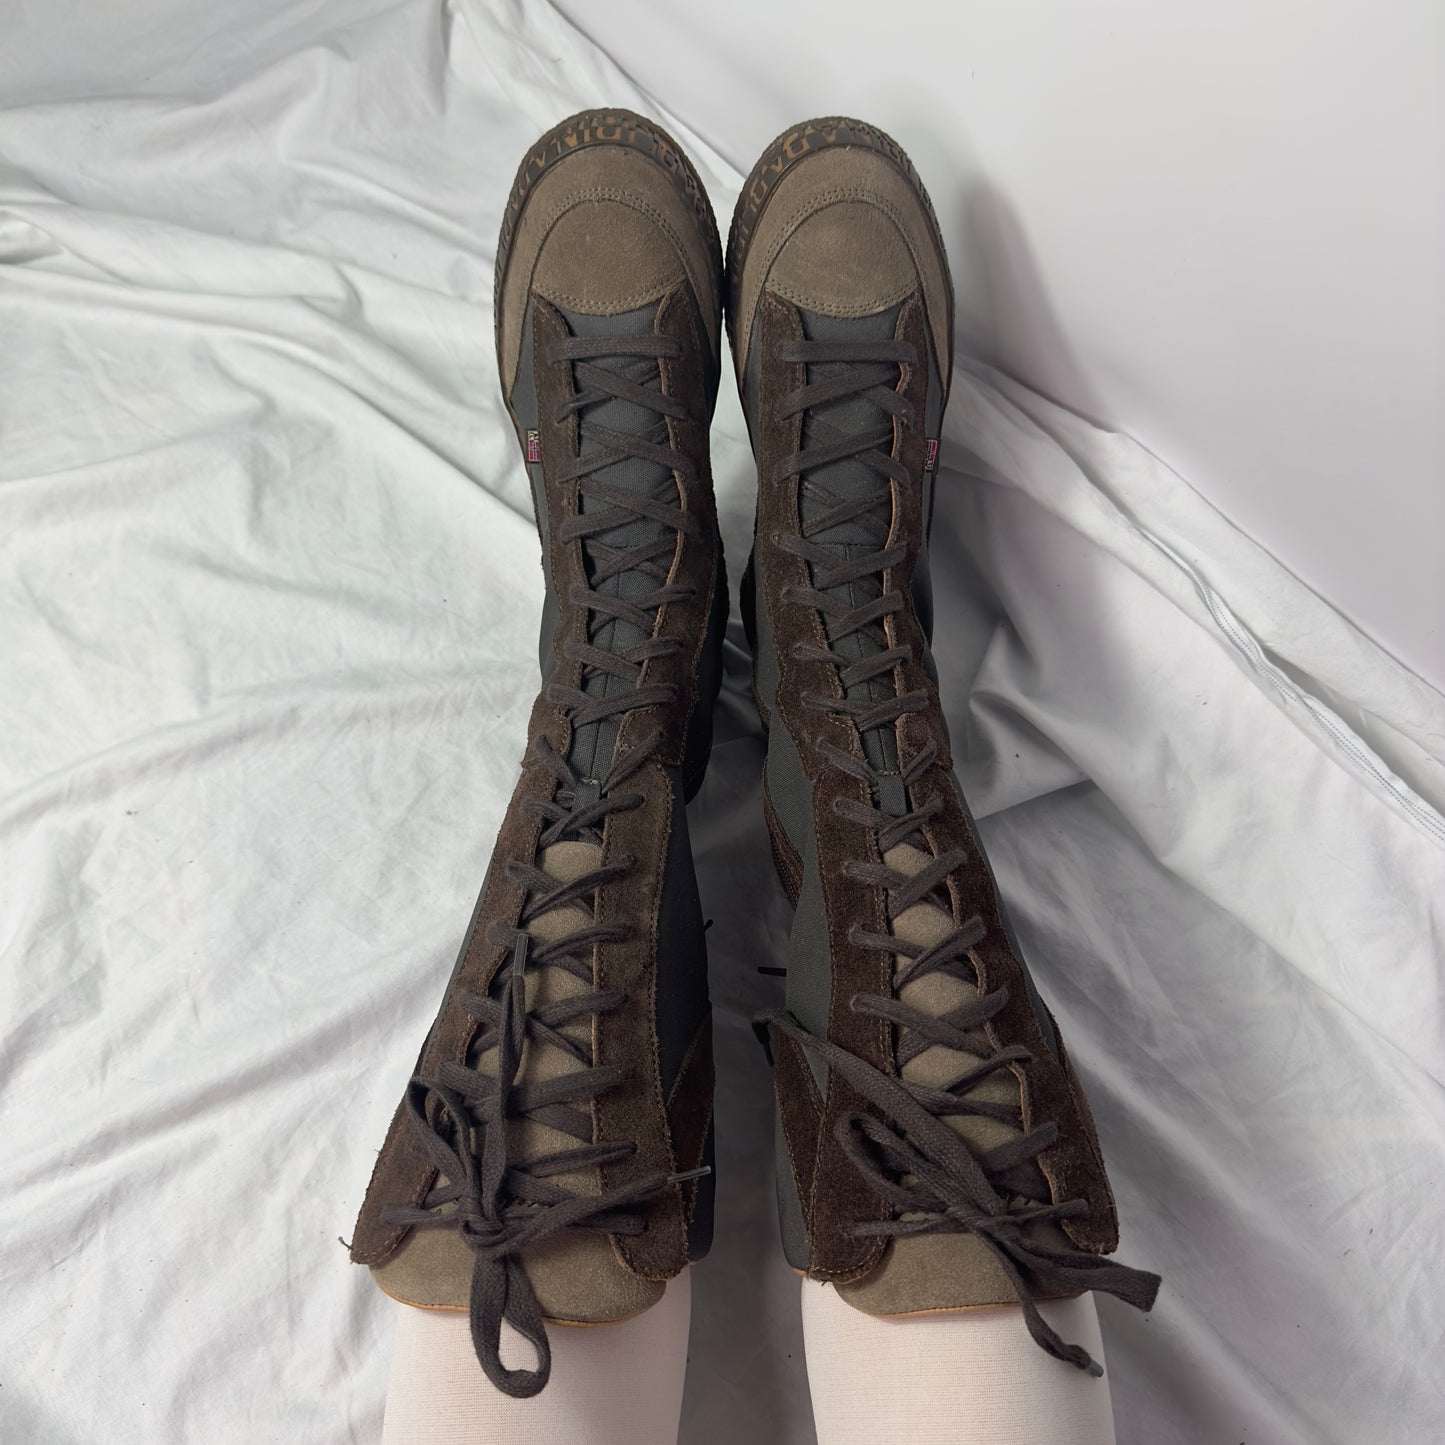 Napapijri Vintage Boxing Lace Up boots